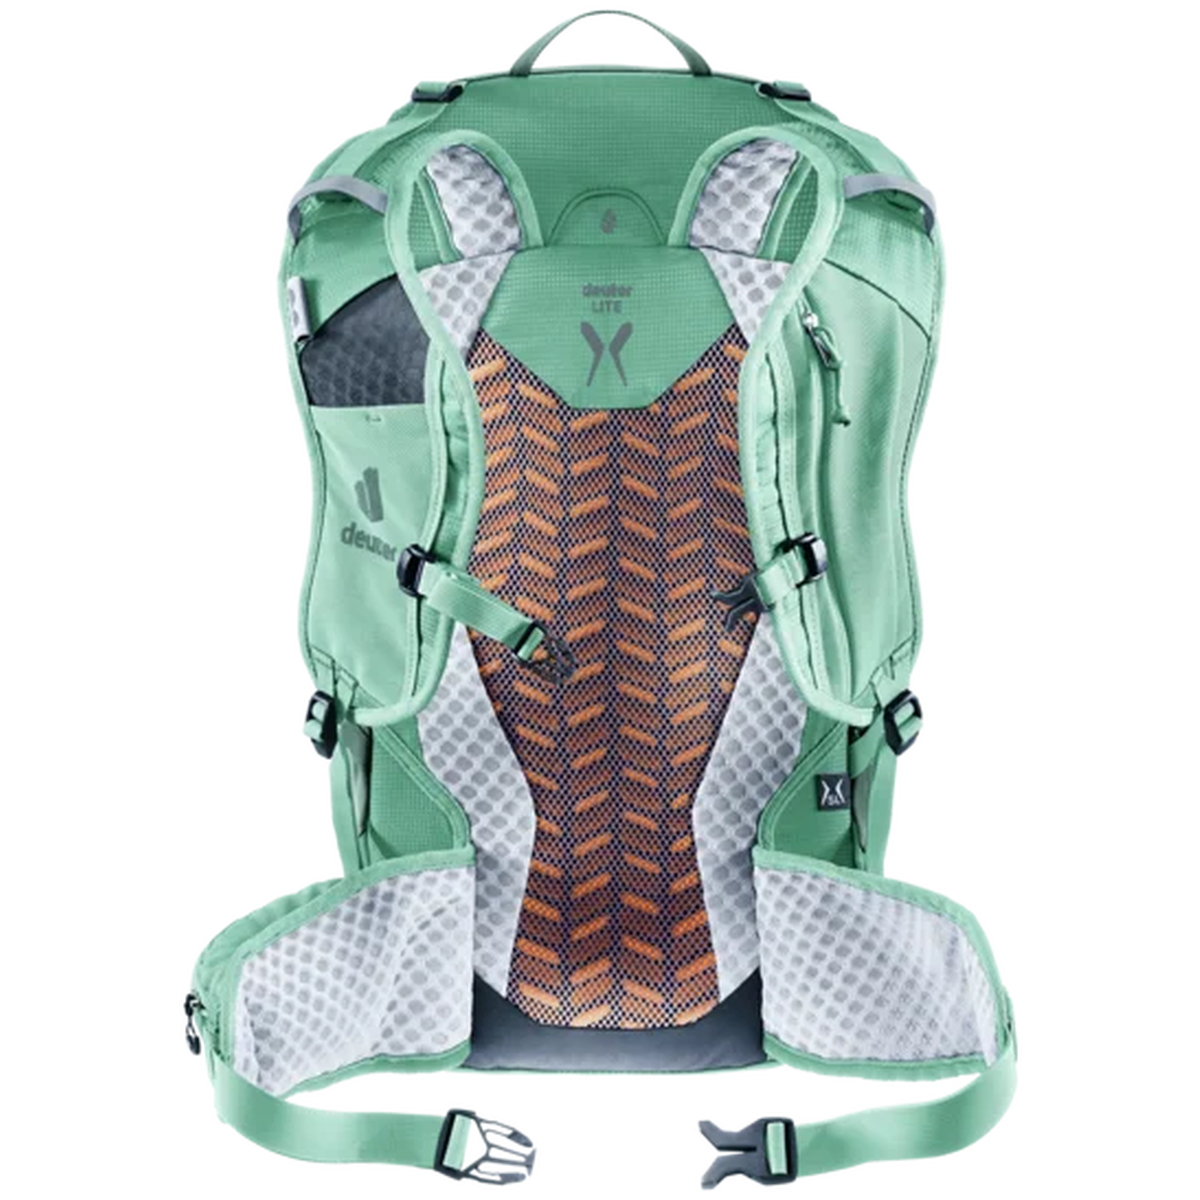 Deuter Speed Lite SL 23 Hiking Backpack - Green